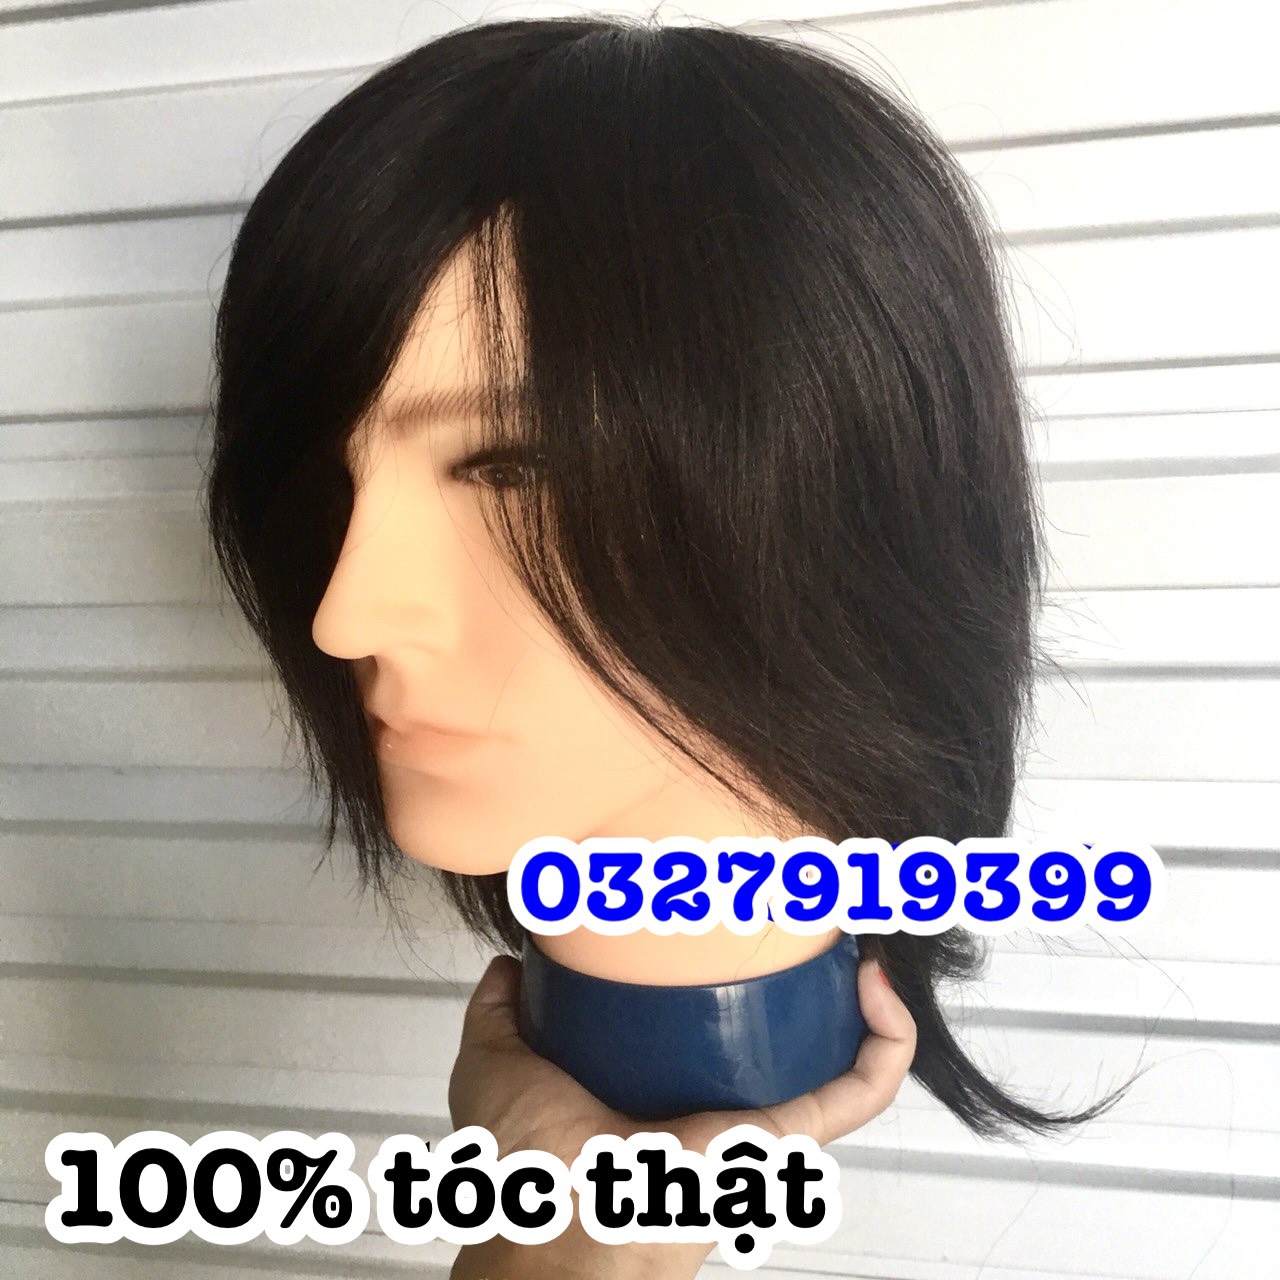 Đầu Mannequin học cắt tóc, Manocanh, Ma nơ canh - Đồ nghề tóc chuyên nghiệp  - 0983258655 - YouTube